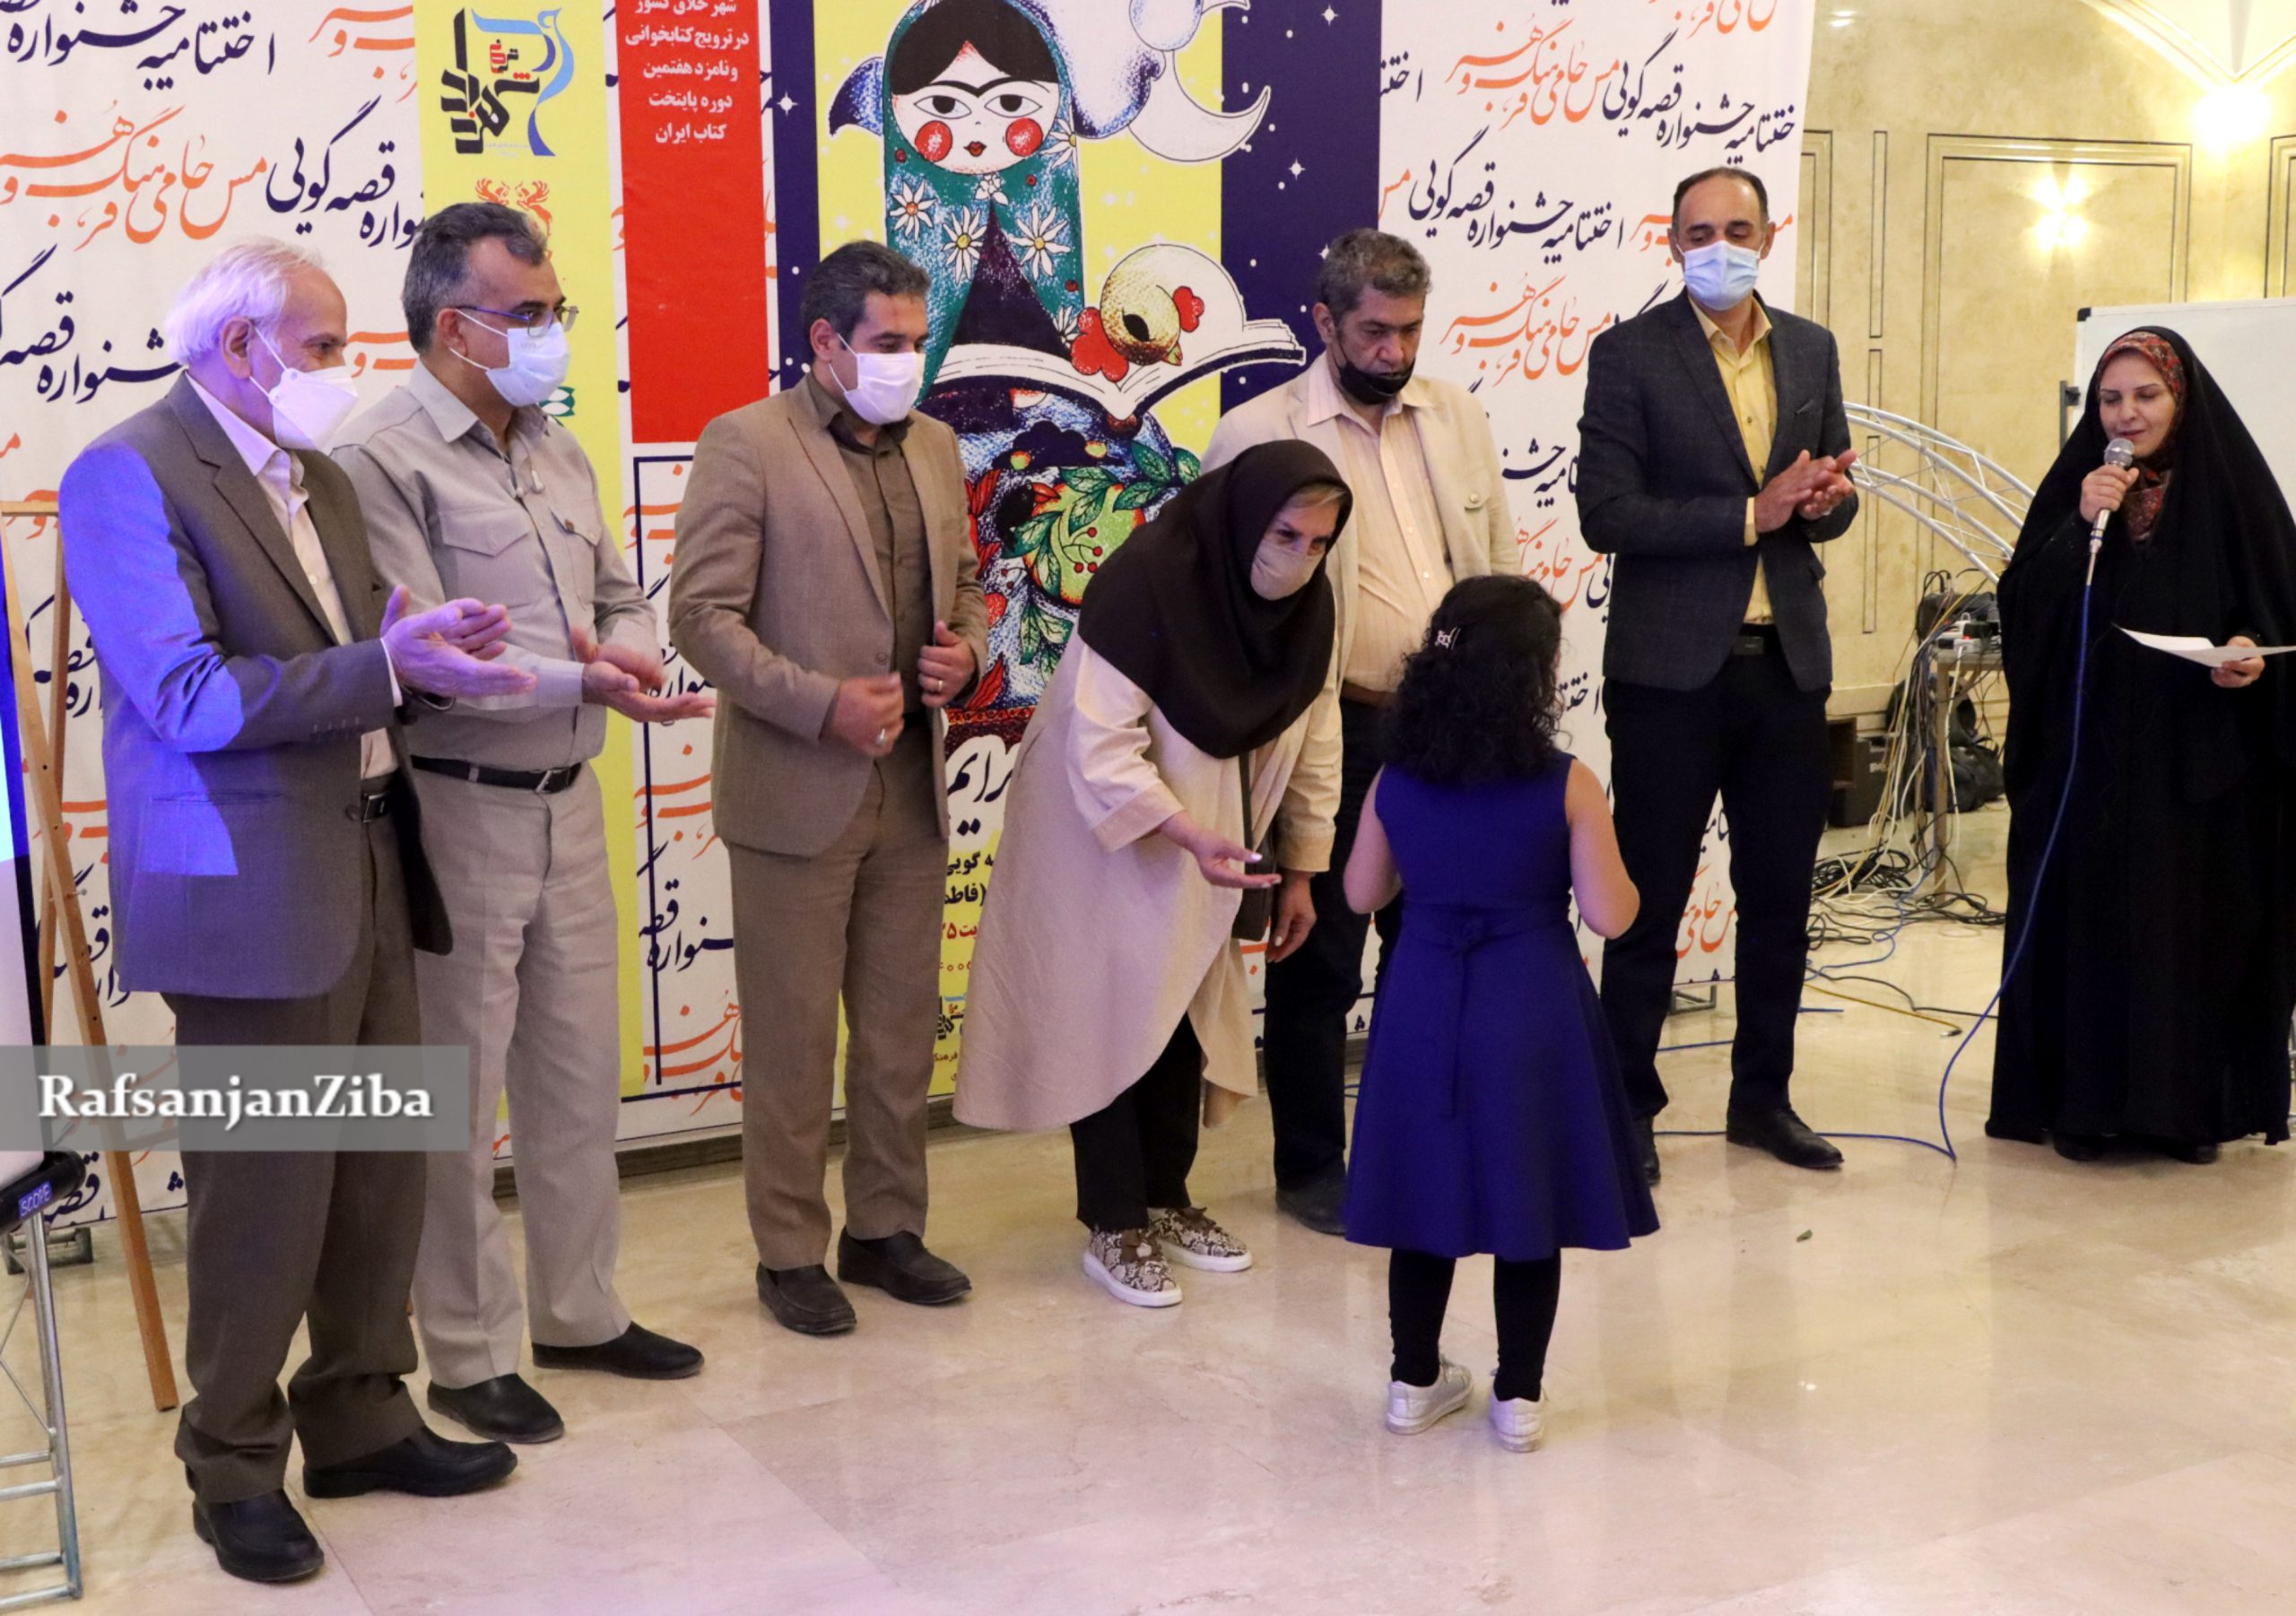 اسامی برگزیدگان دومین جشنواره قصه گویی شهرزاد رفسنجان